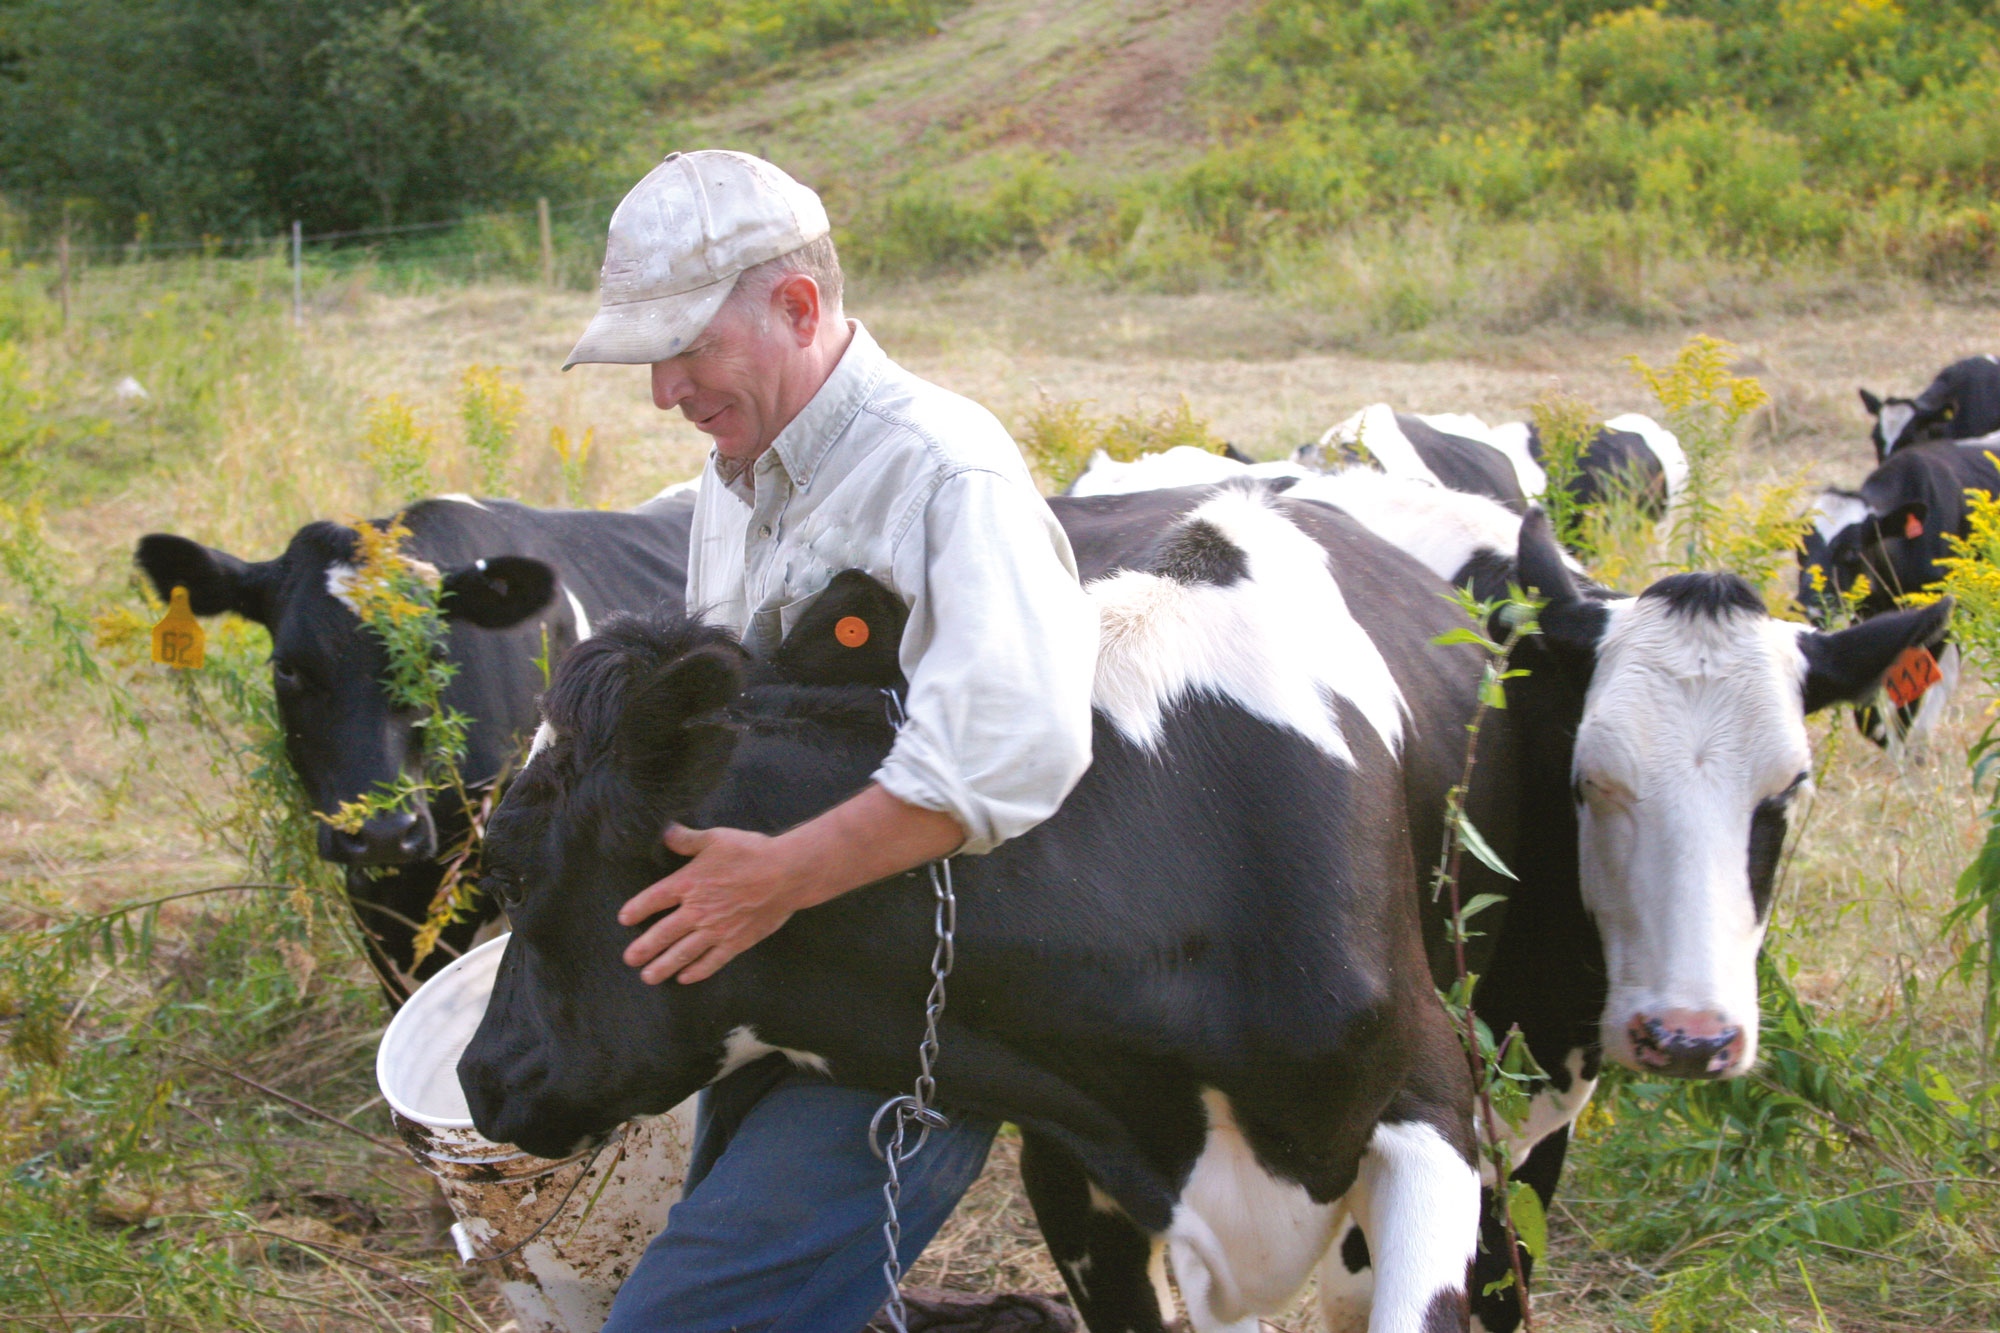 En mand står blandt en flok køer og klapper en ko, mens han fordrer den.